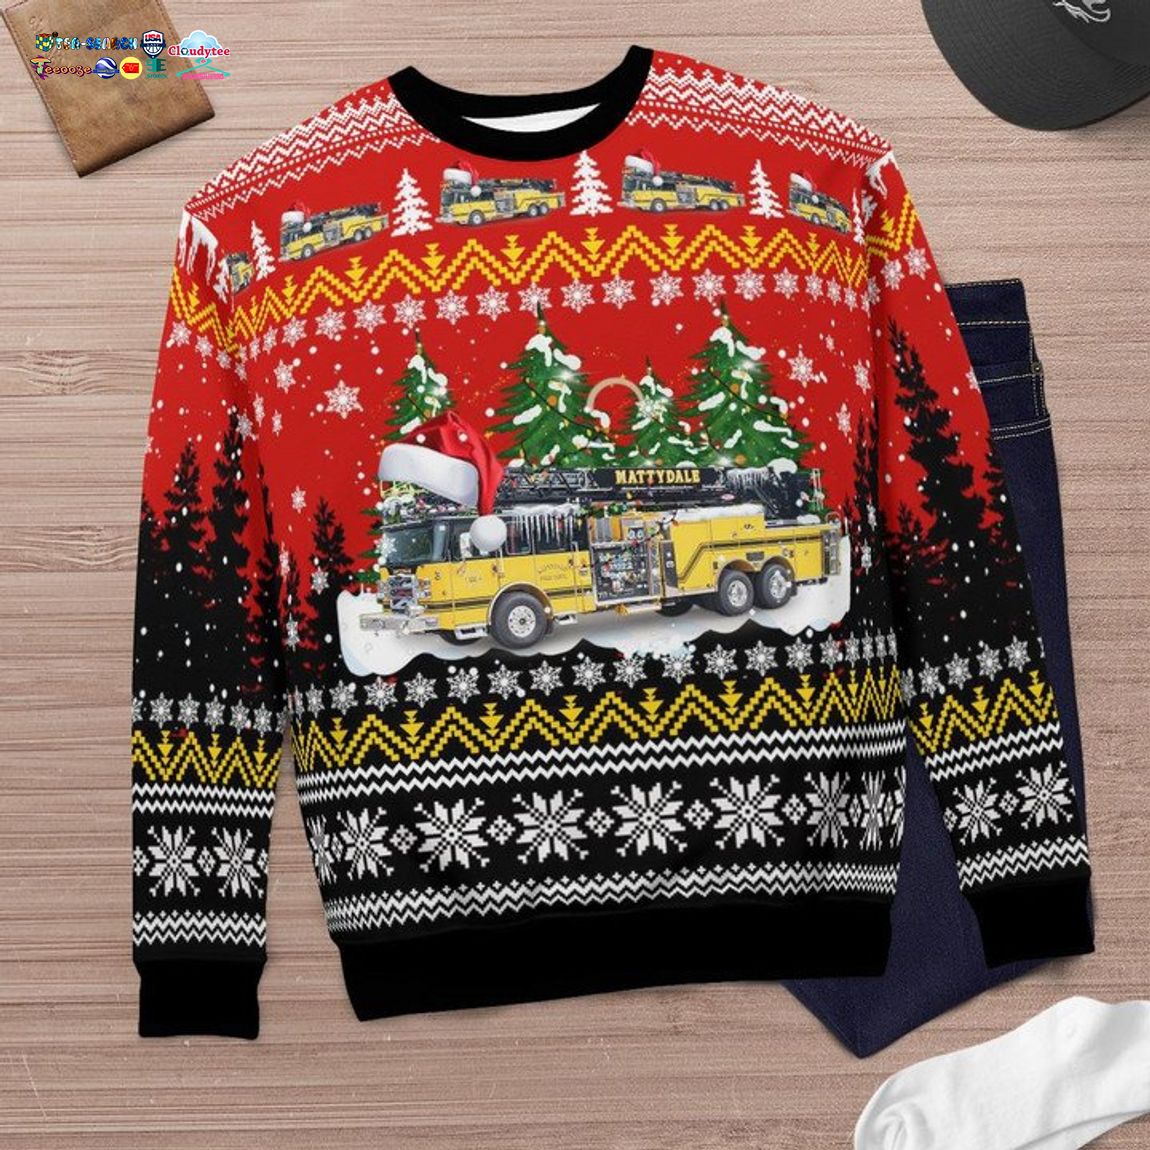 New York Mattydale Fire Department 3D Christmas Sweater